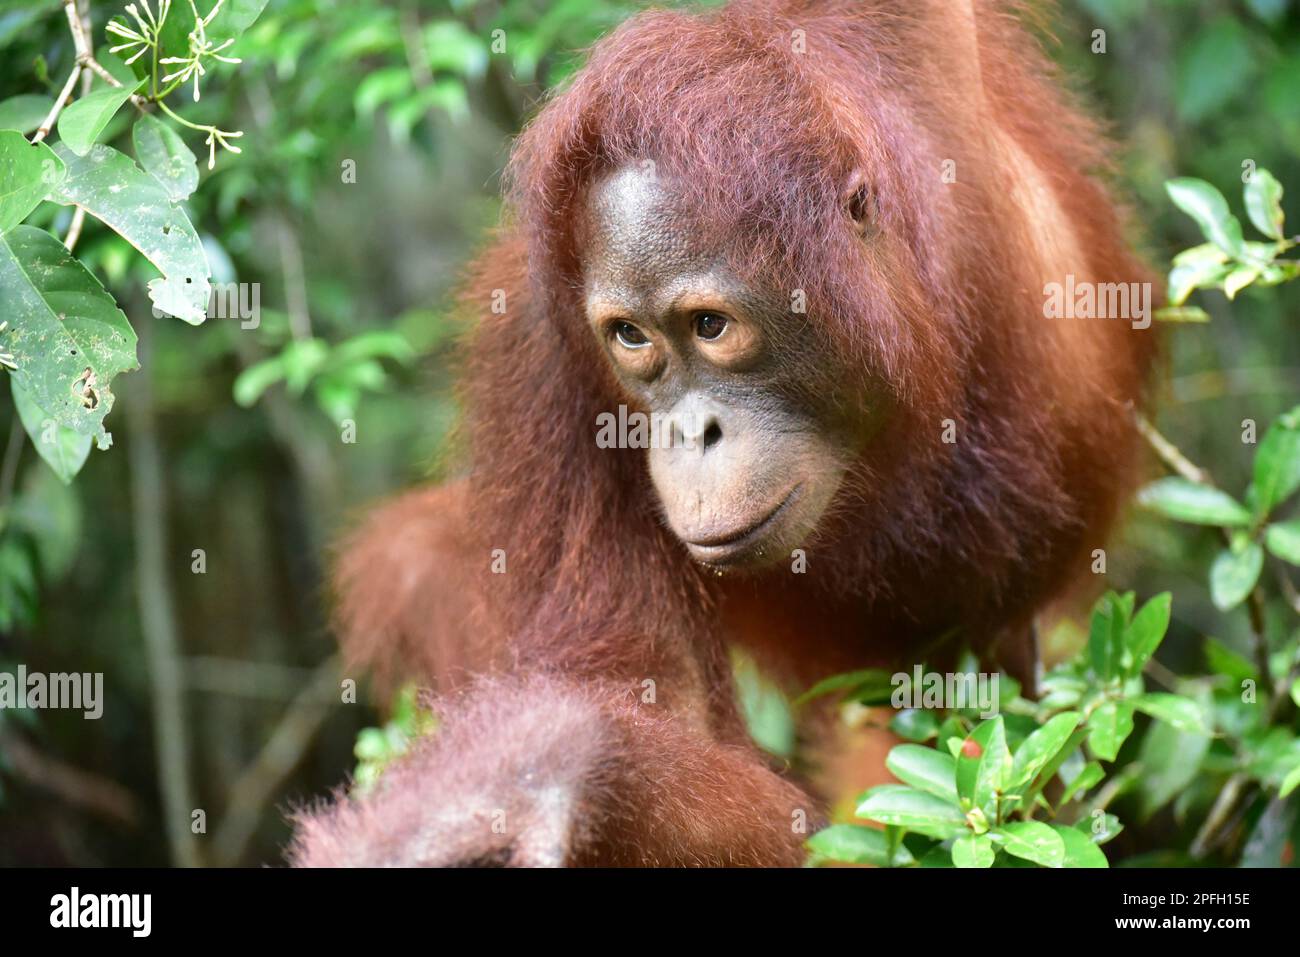 Close up of Orangutan (Pongo pygmaeus wurmbii) Tanjung Puting National Park, Central Kalimantan, Borneo, Indonesia. Stock Photo